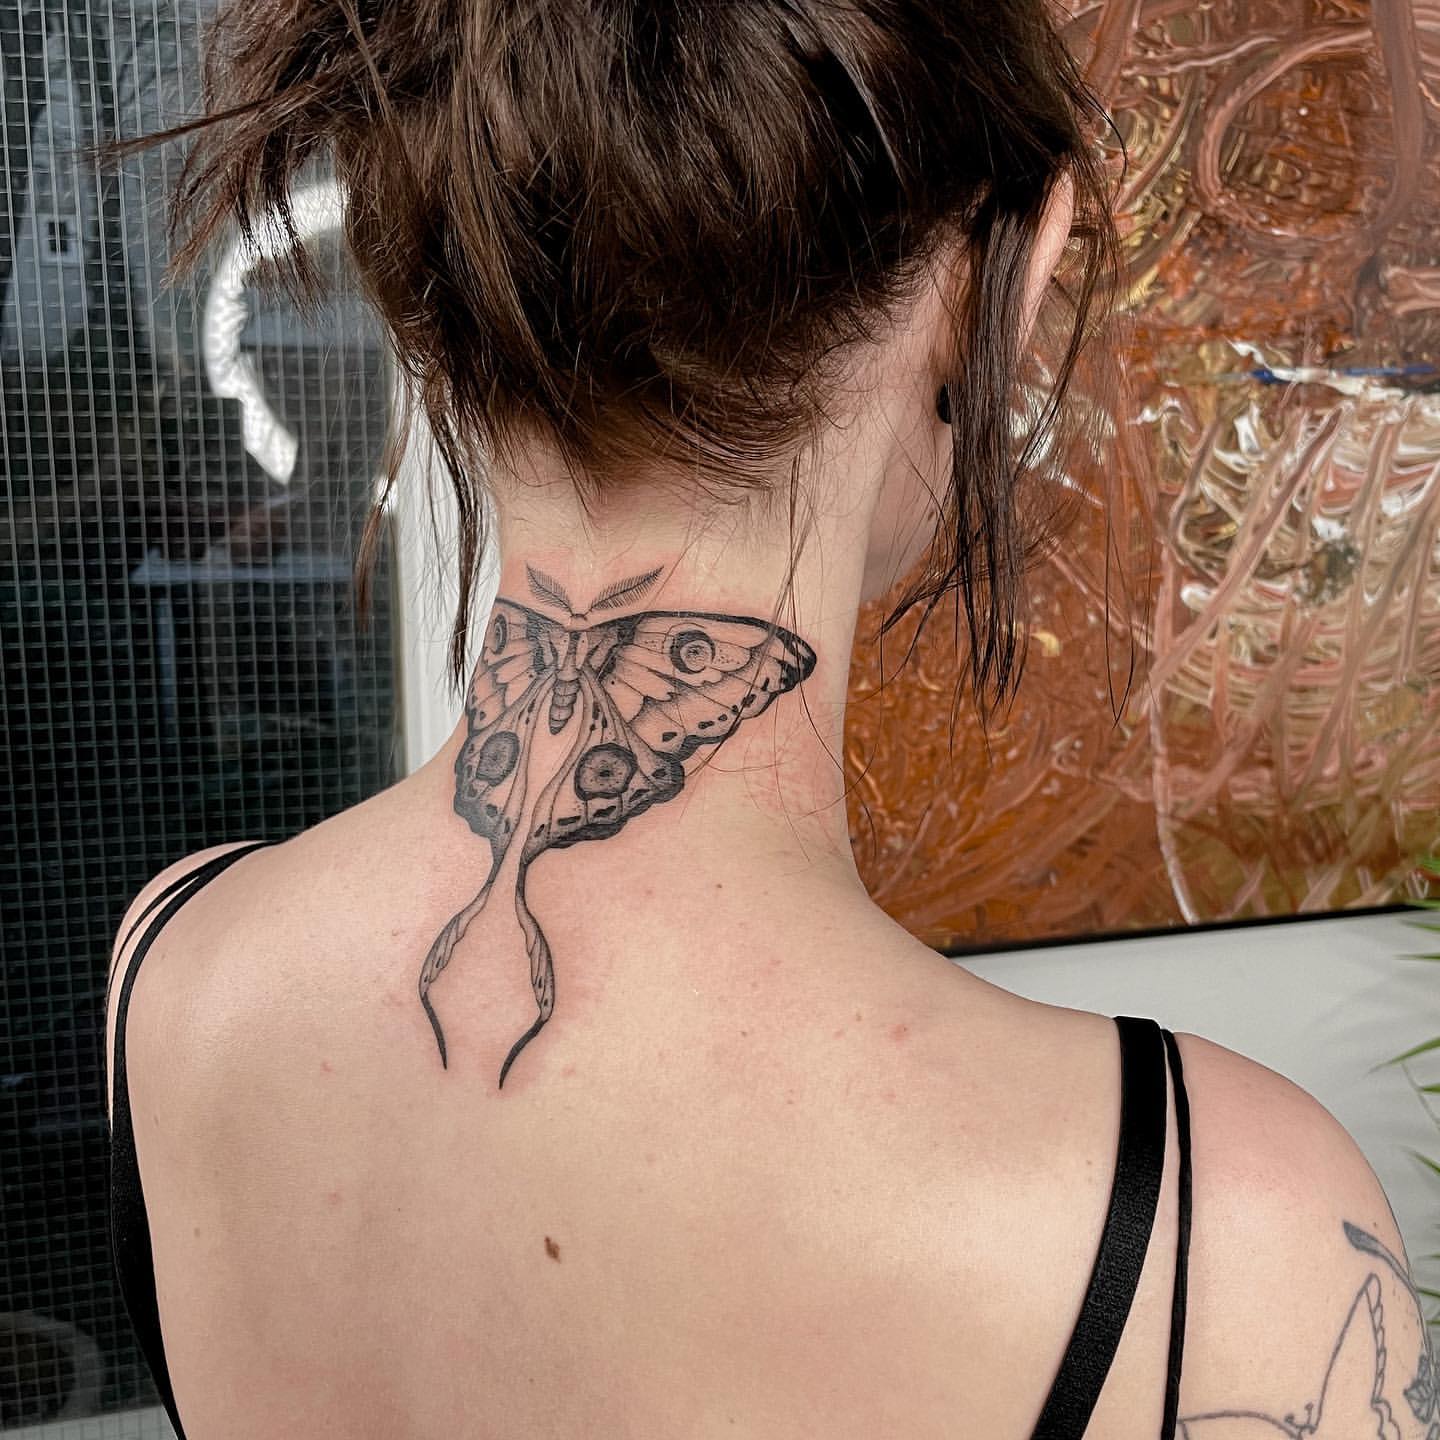 Tattoo uploaded by Vale Lovette  Butterfly neck tattoo by Vale Lovette  ValeLovette color neotraditional Artnouveau butterfly wings pattern  necktattoo ornamental  Tattoodo